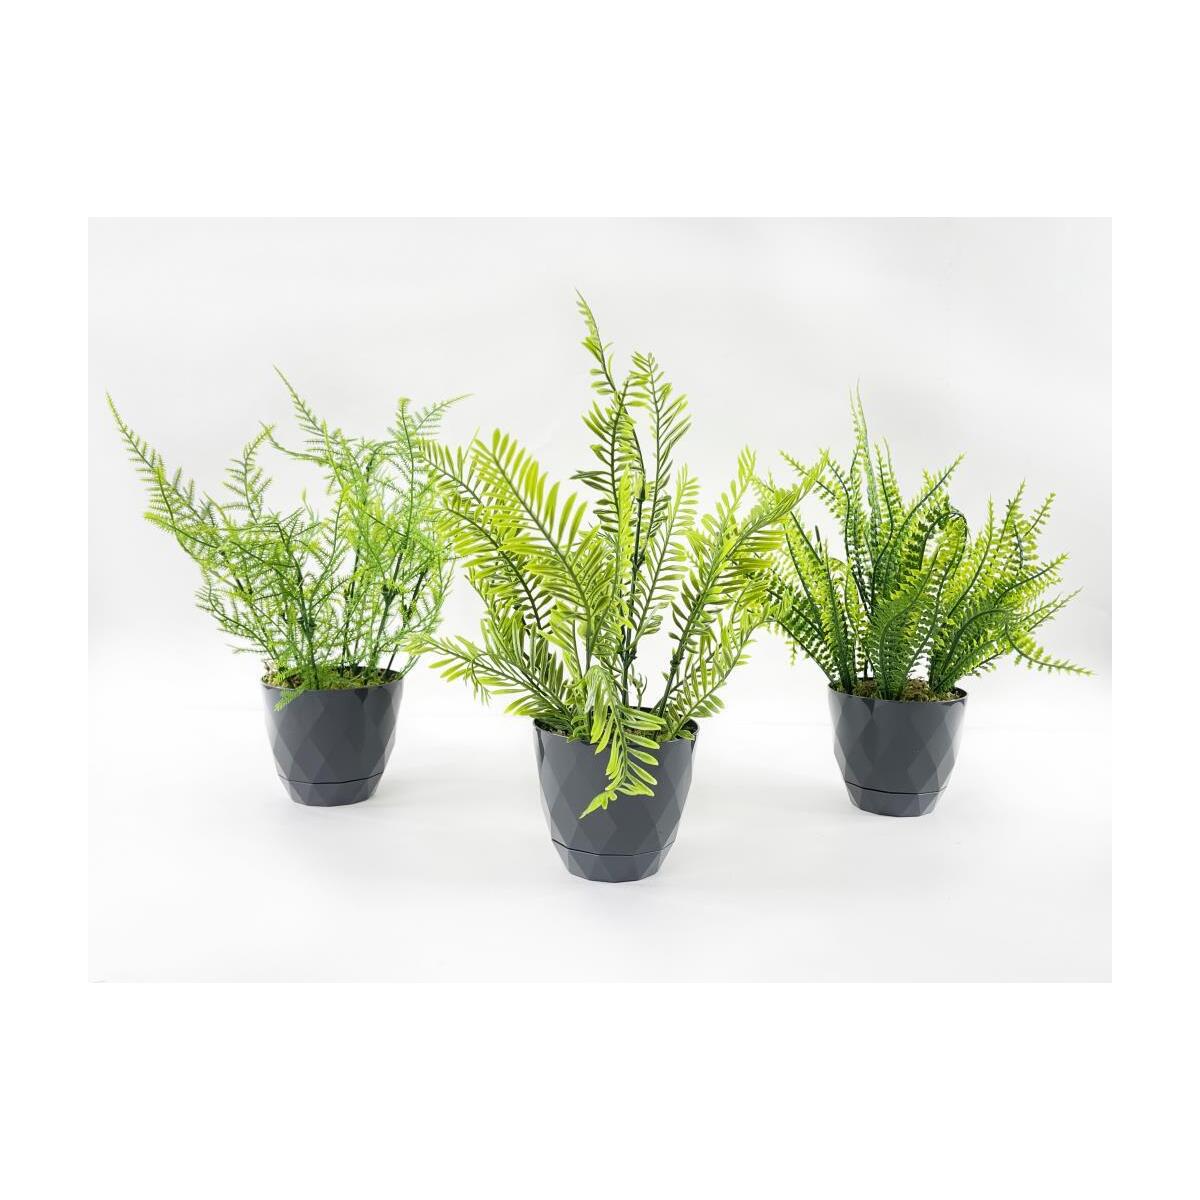 Yapay Çiçek Siyah Saksıda 3 Adet Mini Yeşil Bitkiler